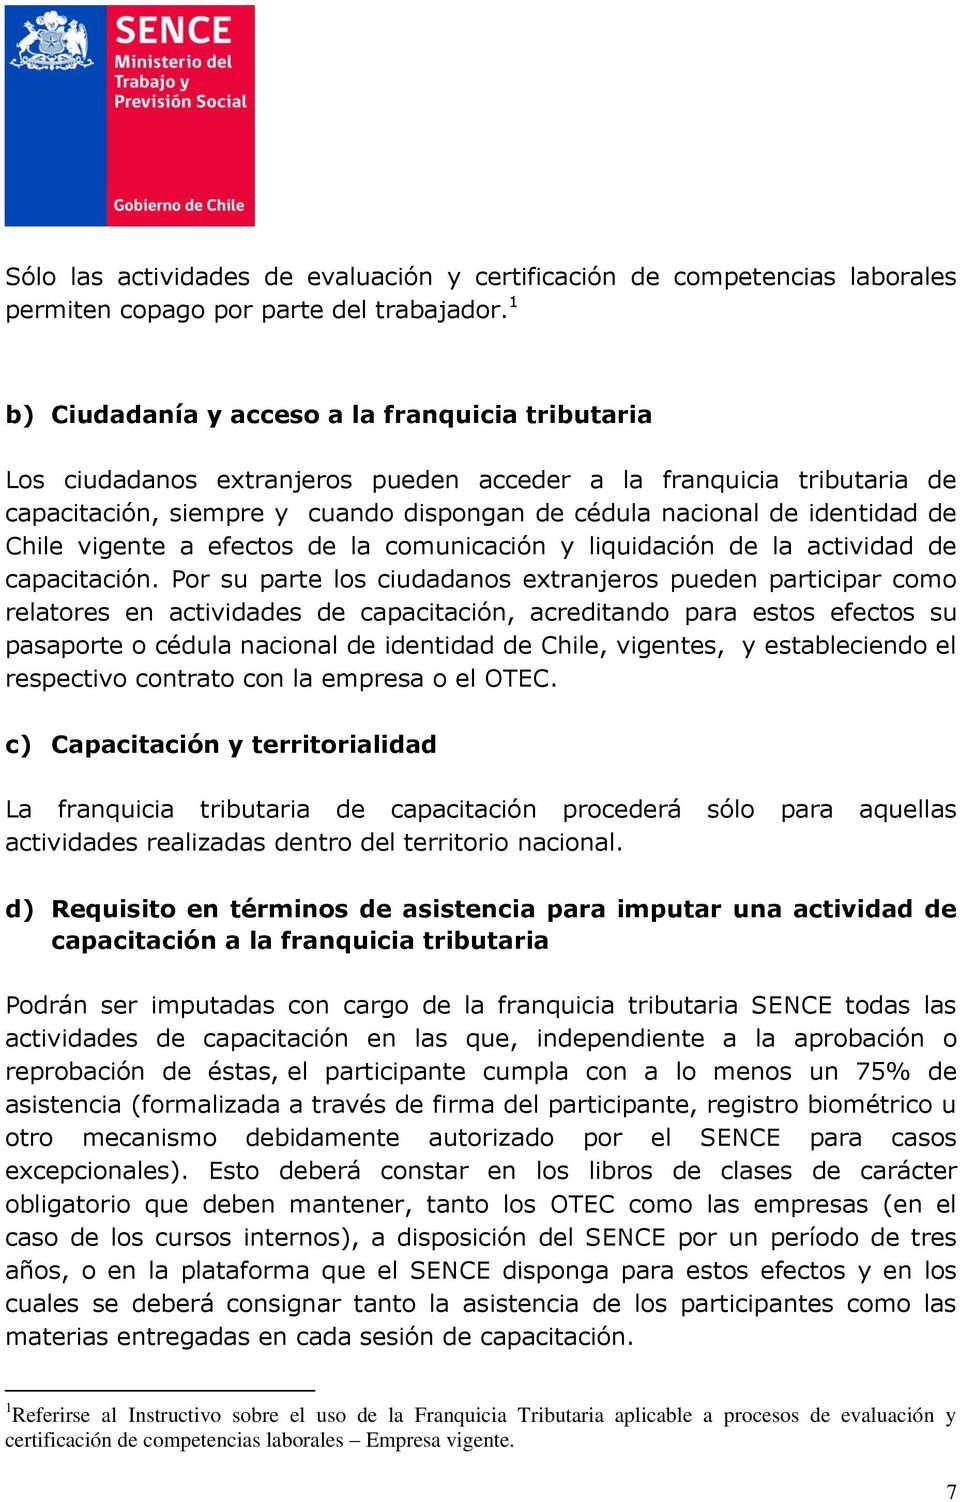 Chile vigente a efectos de la comunicación y liquidación de la actividad de capacitación.